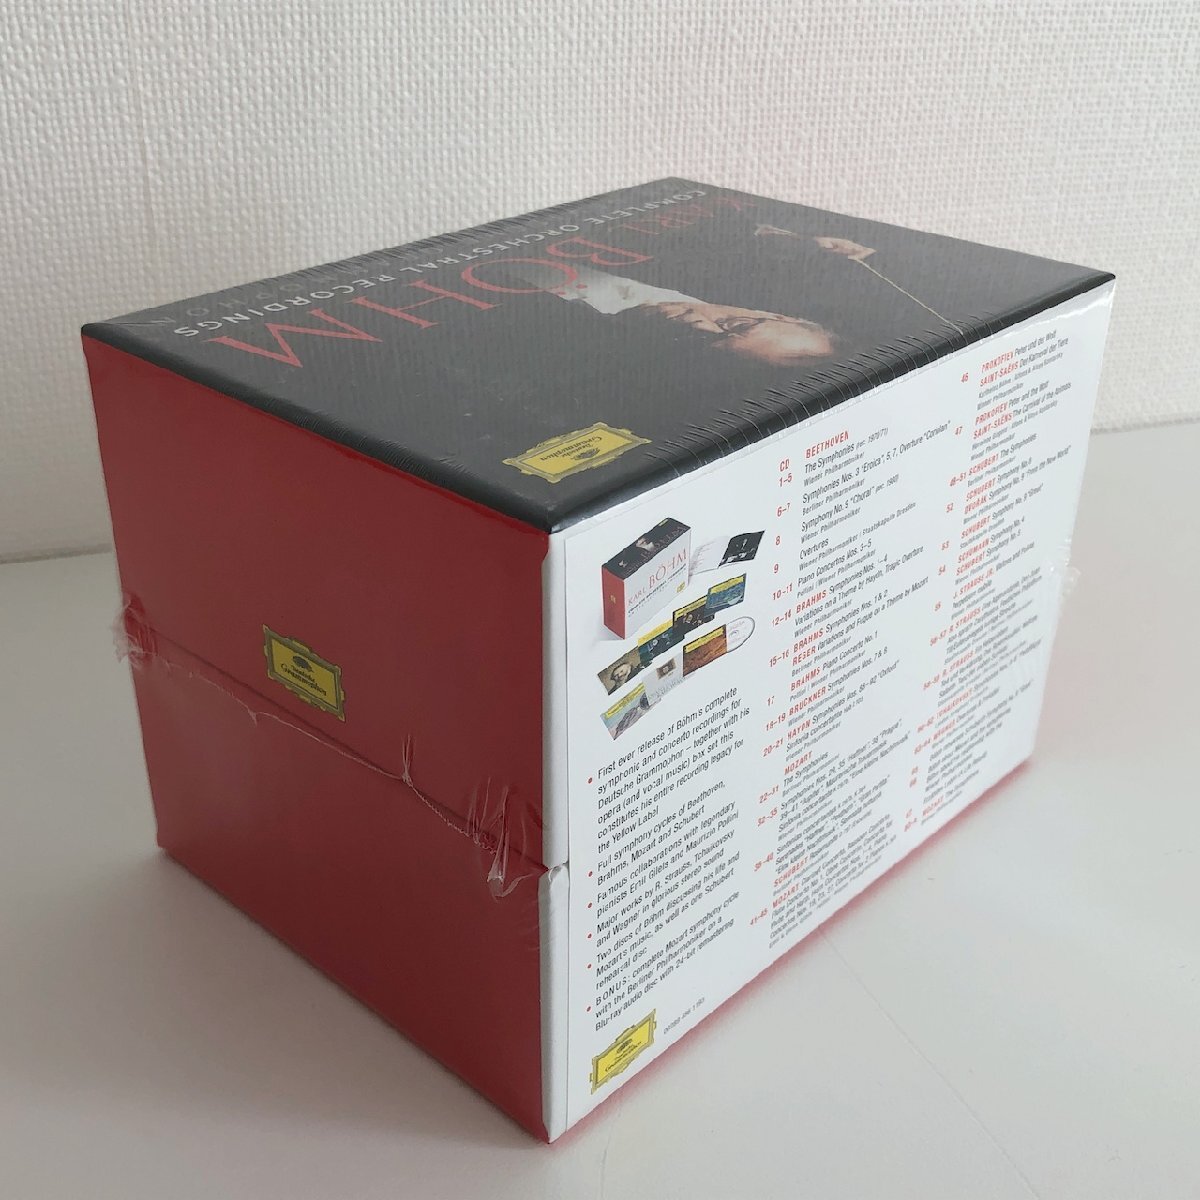 【未開封】CD/67CD+Blu-ray Audio/ カール・ベーム / ドイツ・グラモフォン管弦楽録音全集 / 輸入盤 68枚組 BOX 028948611935 40409の画像3